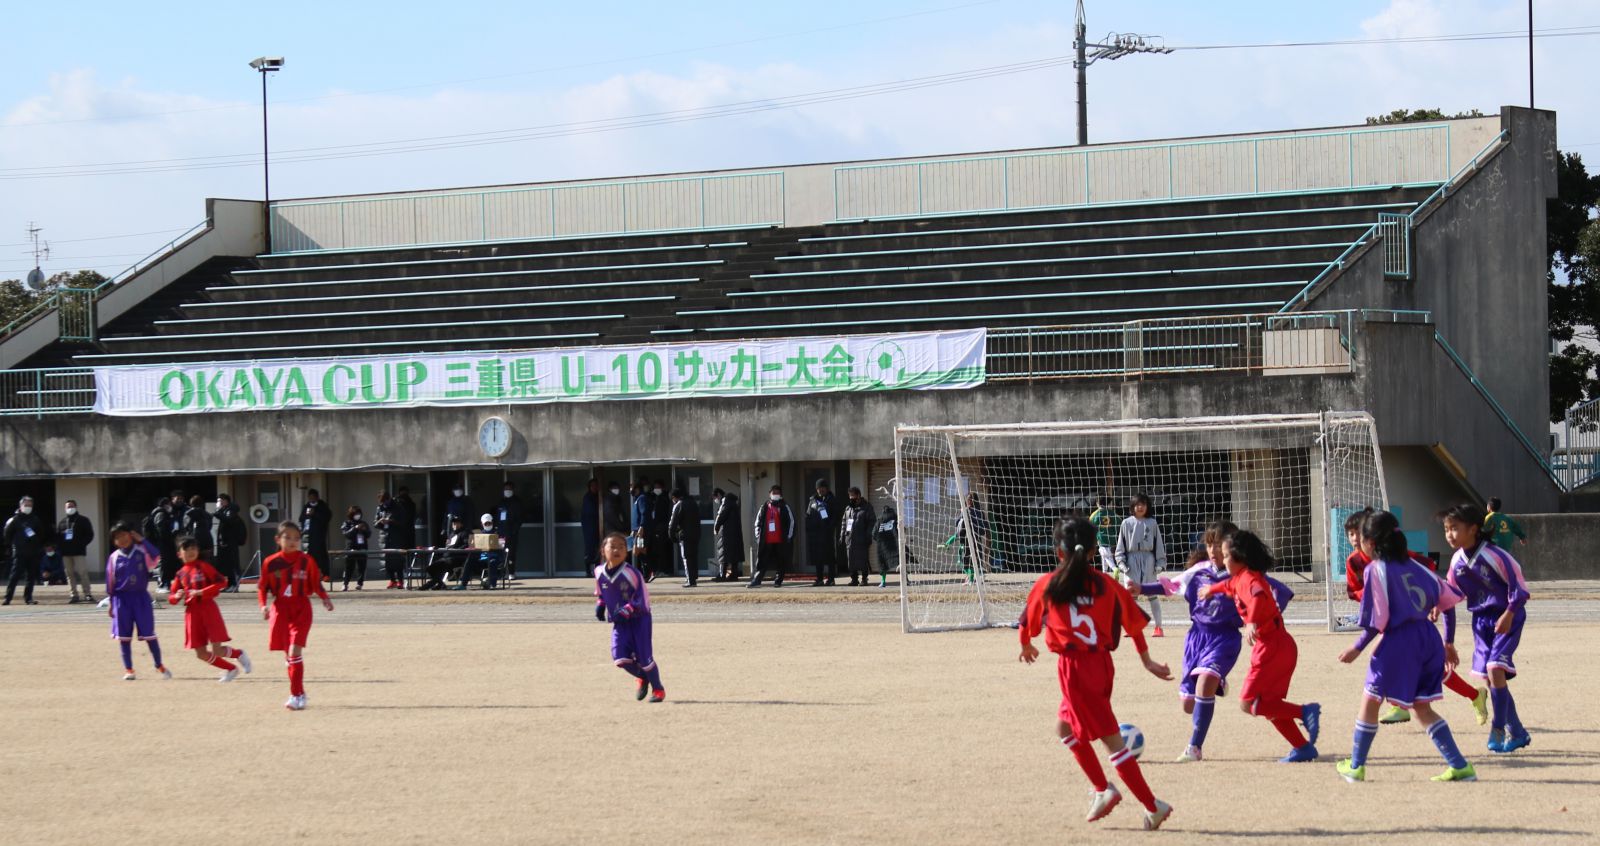 第2回 Okaya Cup 三重県 少年 少女 U 10サッカー大会21が開催されました 岡谷鋼機株式会社